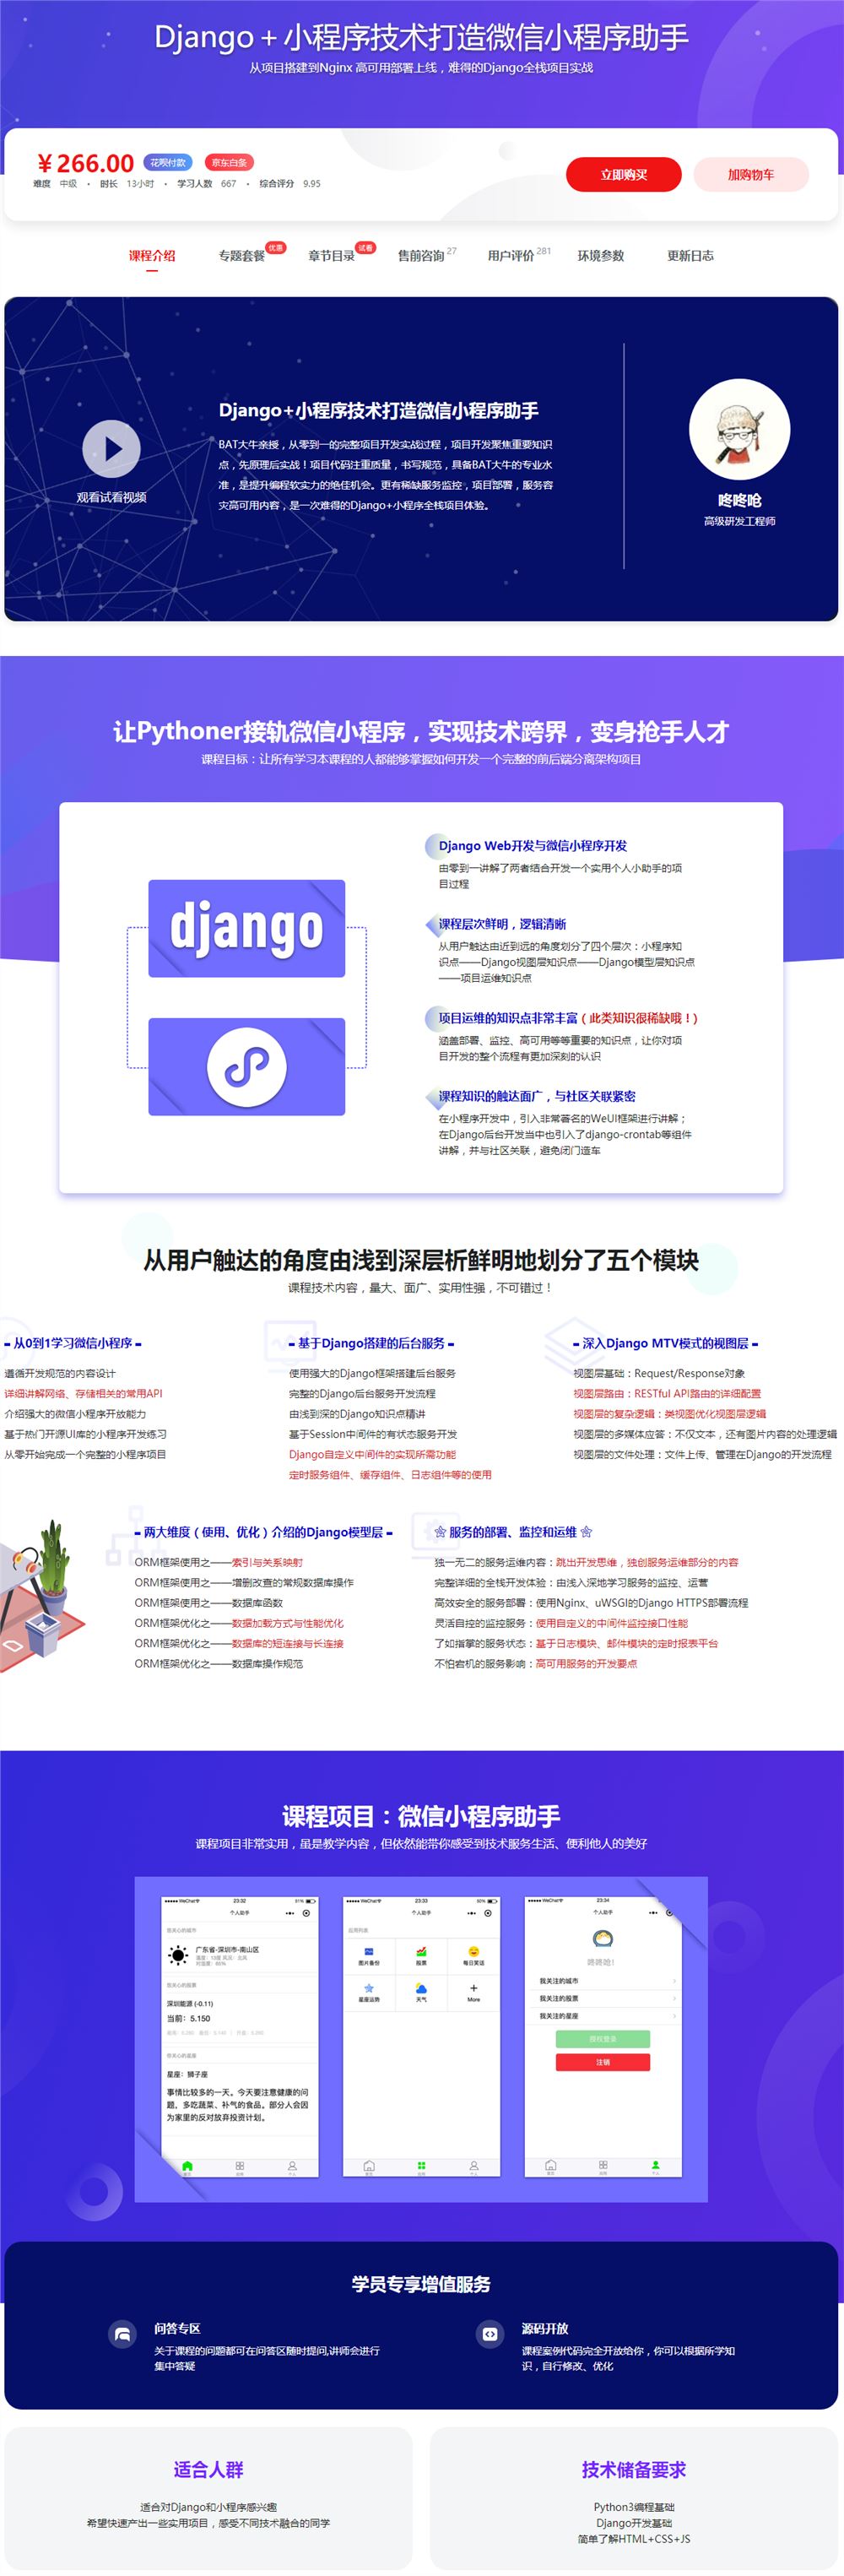 Django＋小程序技术打造微信小程序助手